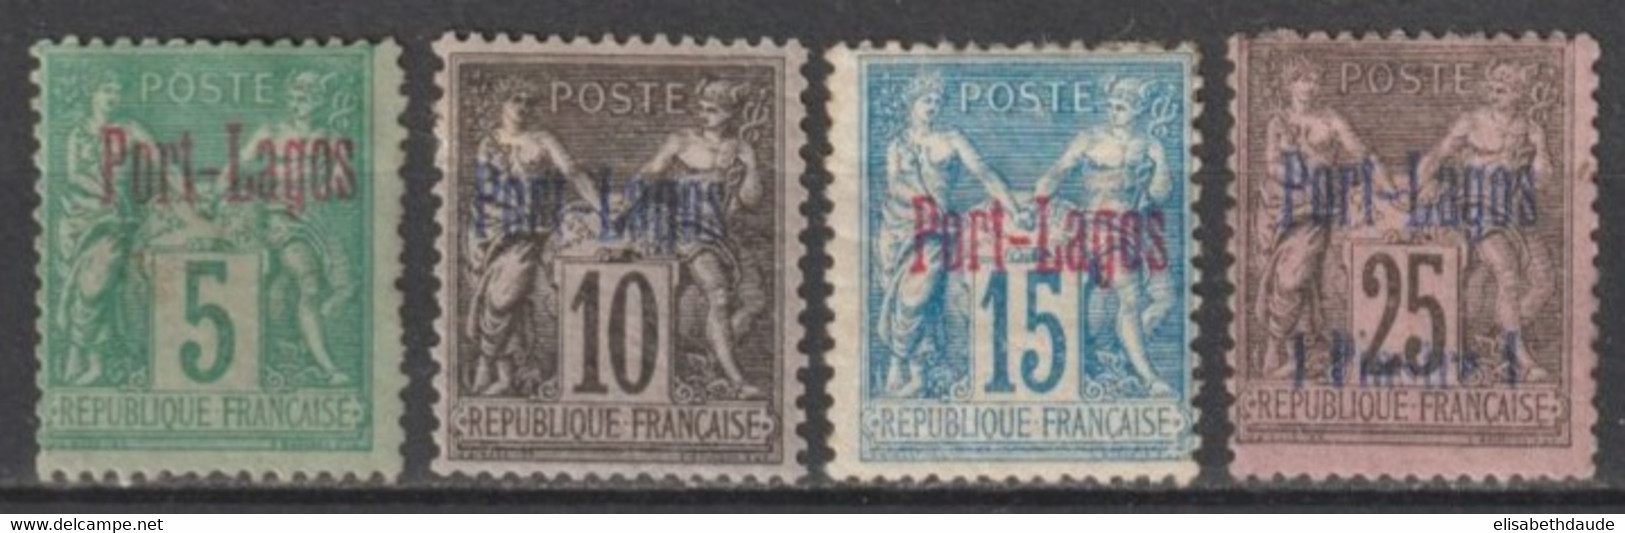 PORT LAGOS - 1893 - YVERT N° 1/4 * MH CHARNIERE ASSEZ FORTE - COTE = 335 EUR. - Ongebruikt